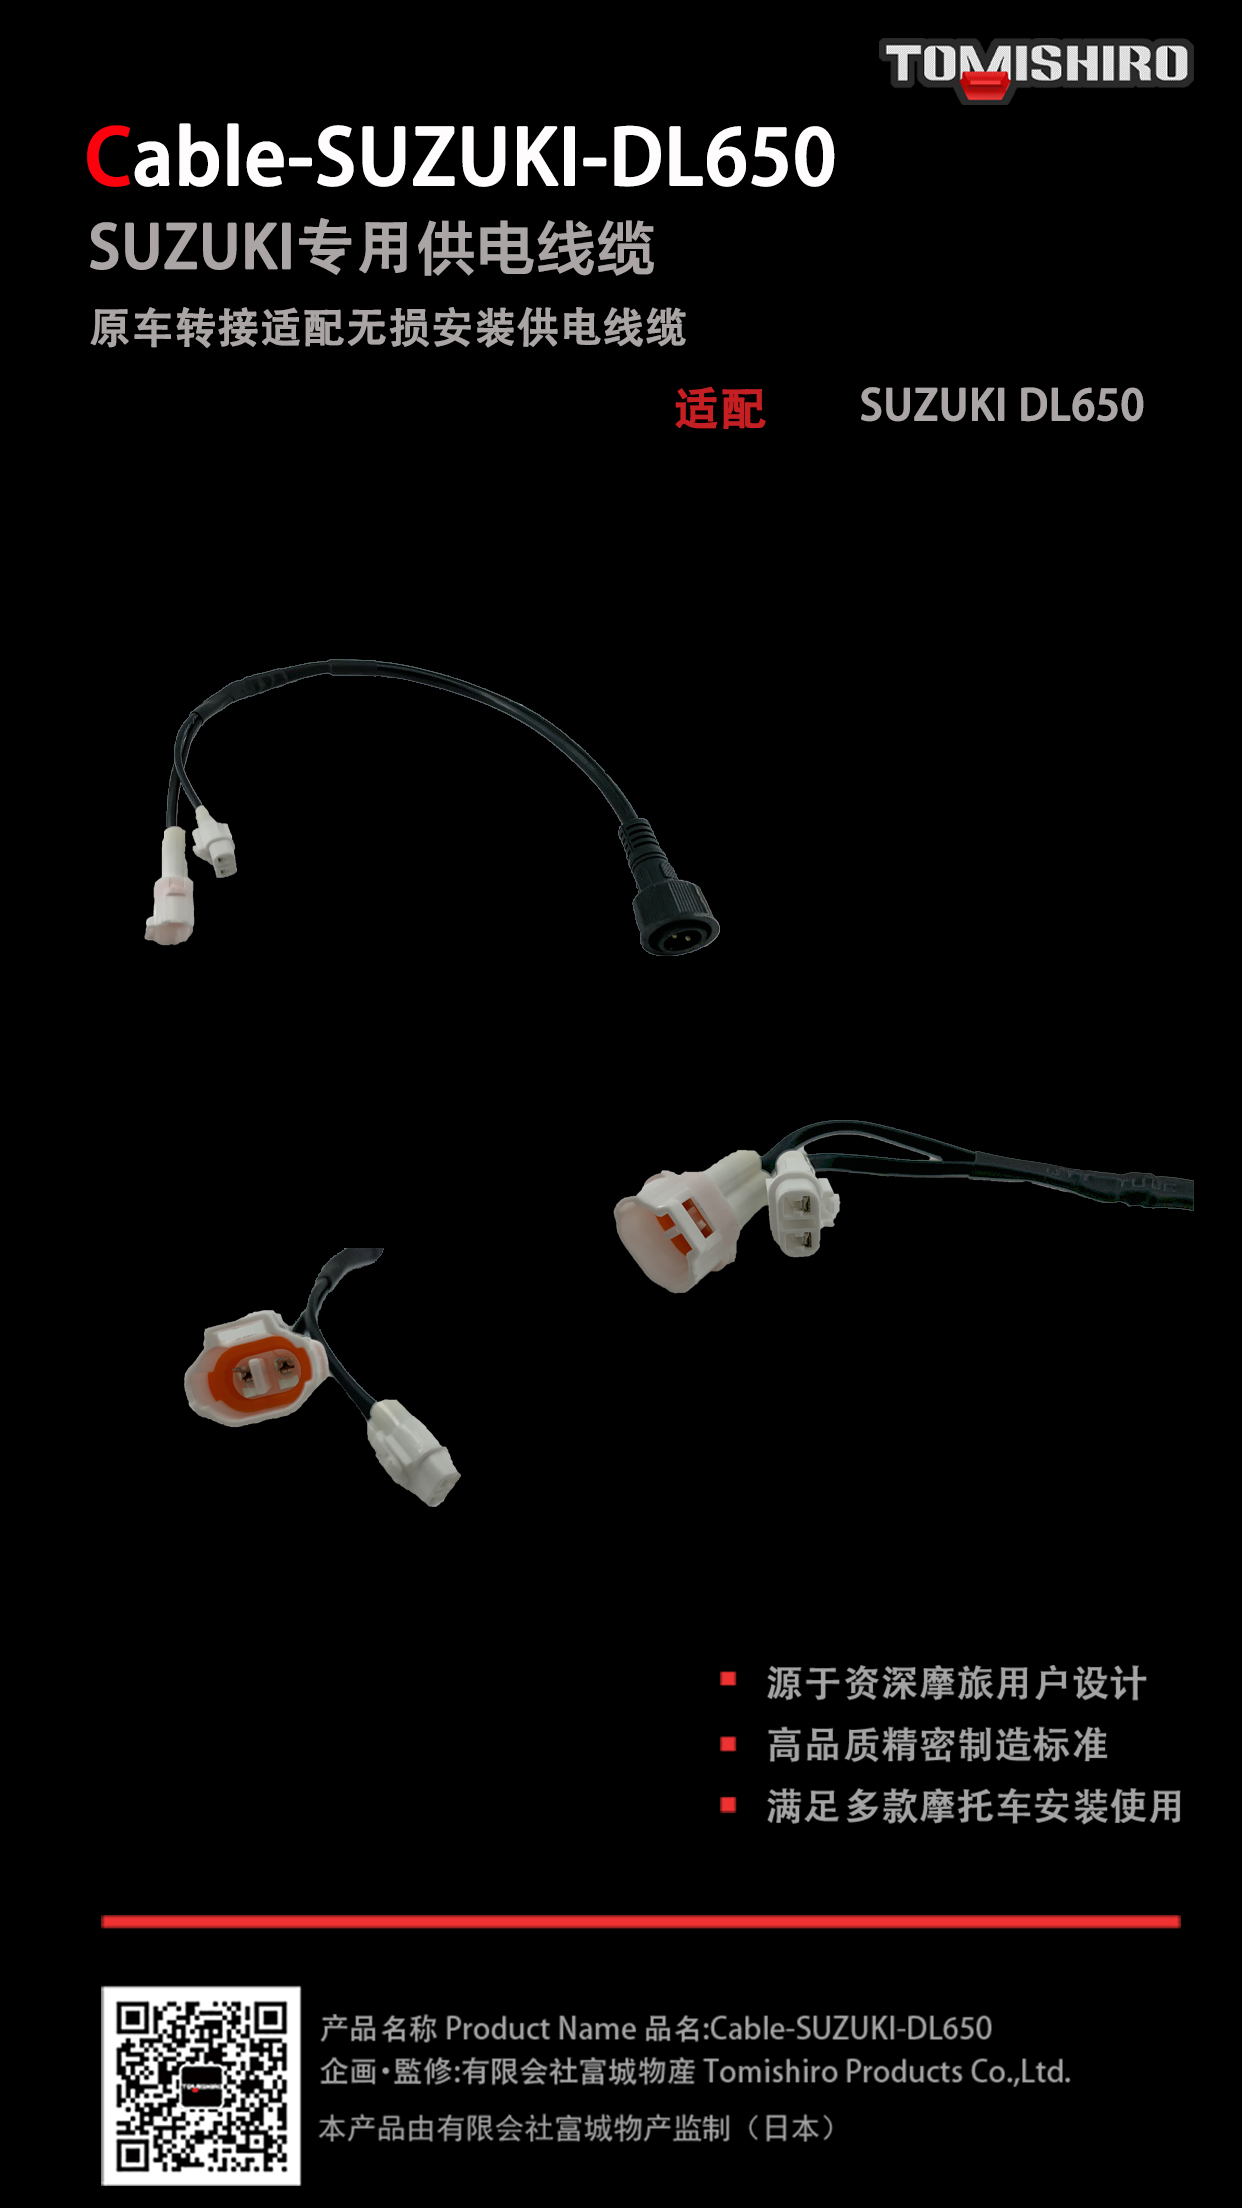 Cable-SUZUKI-DL650实物图.jpg